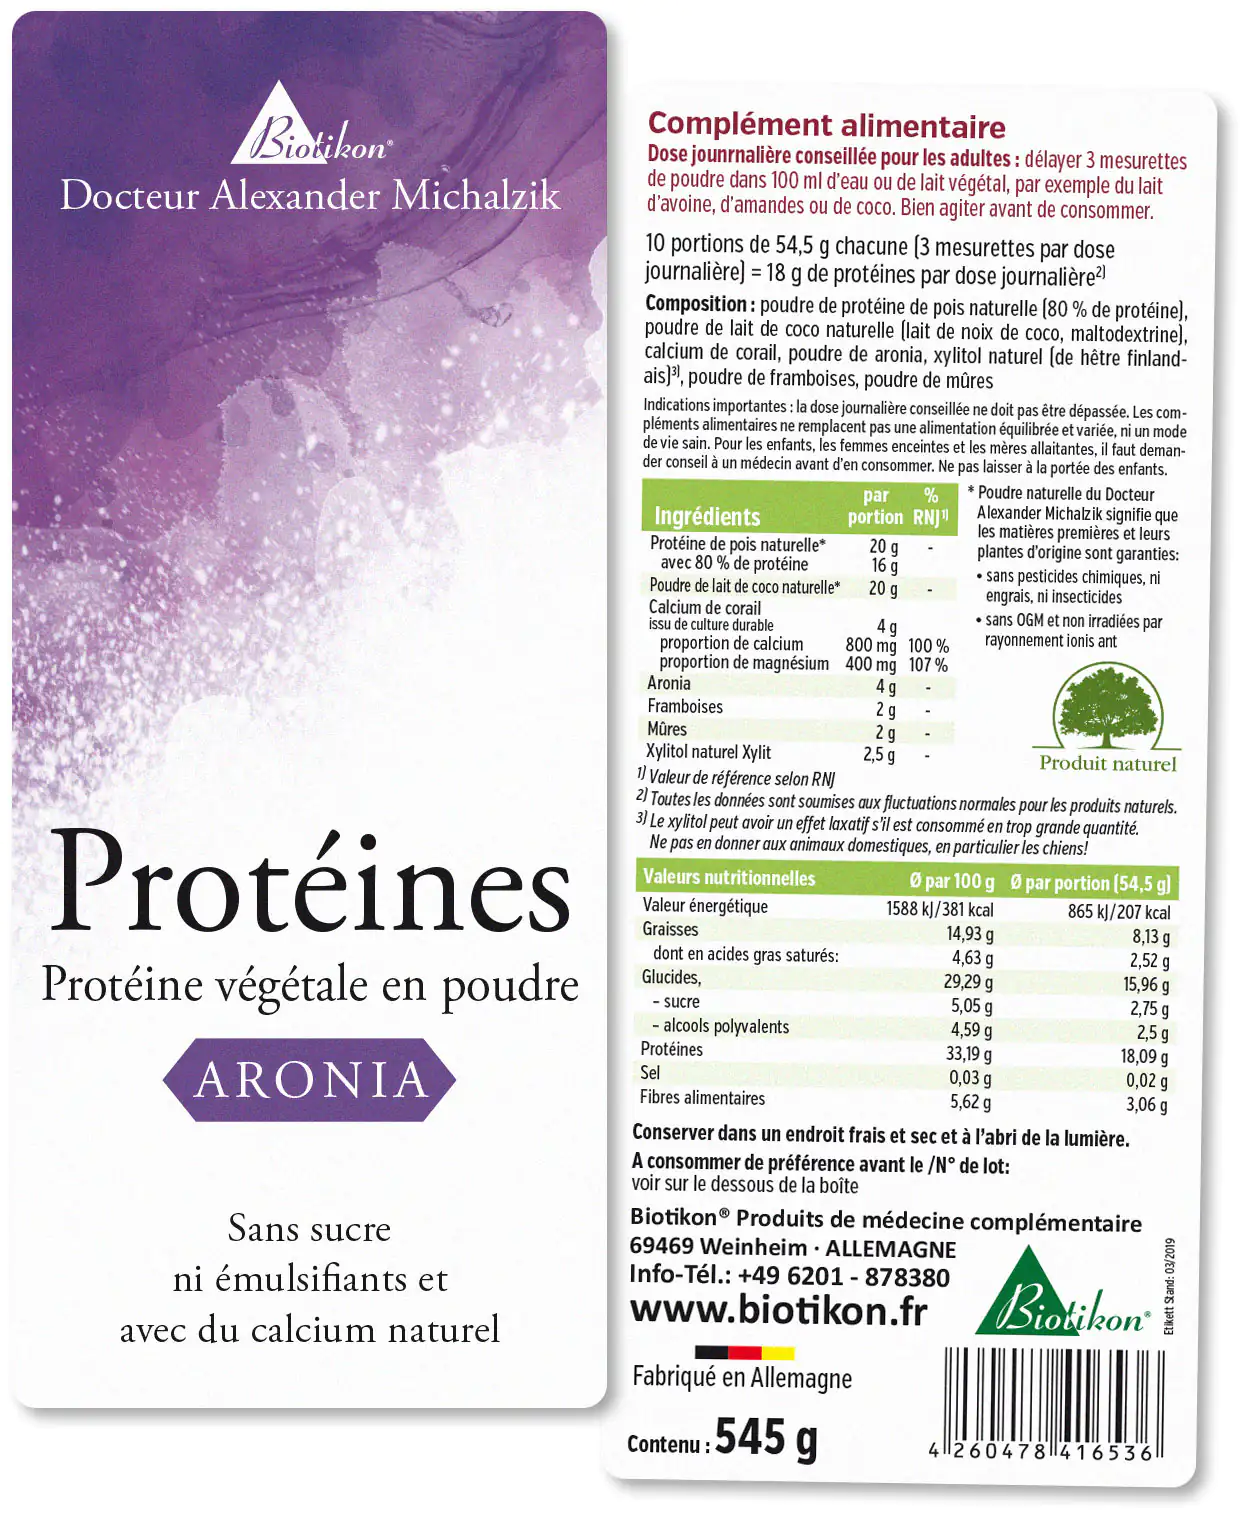 Protéines - en lot de 2, Aronia + Coco